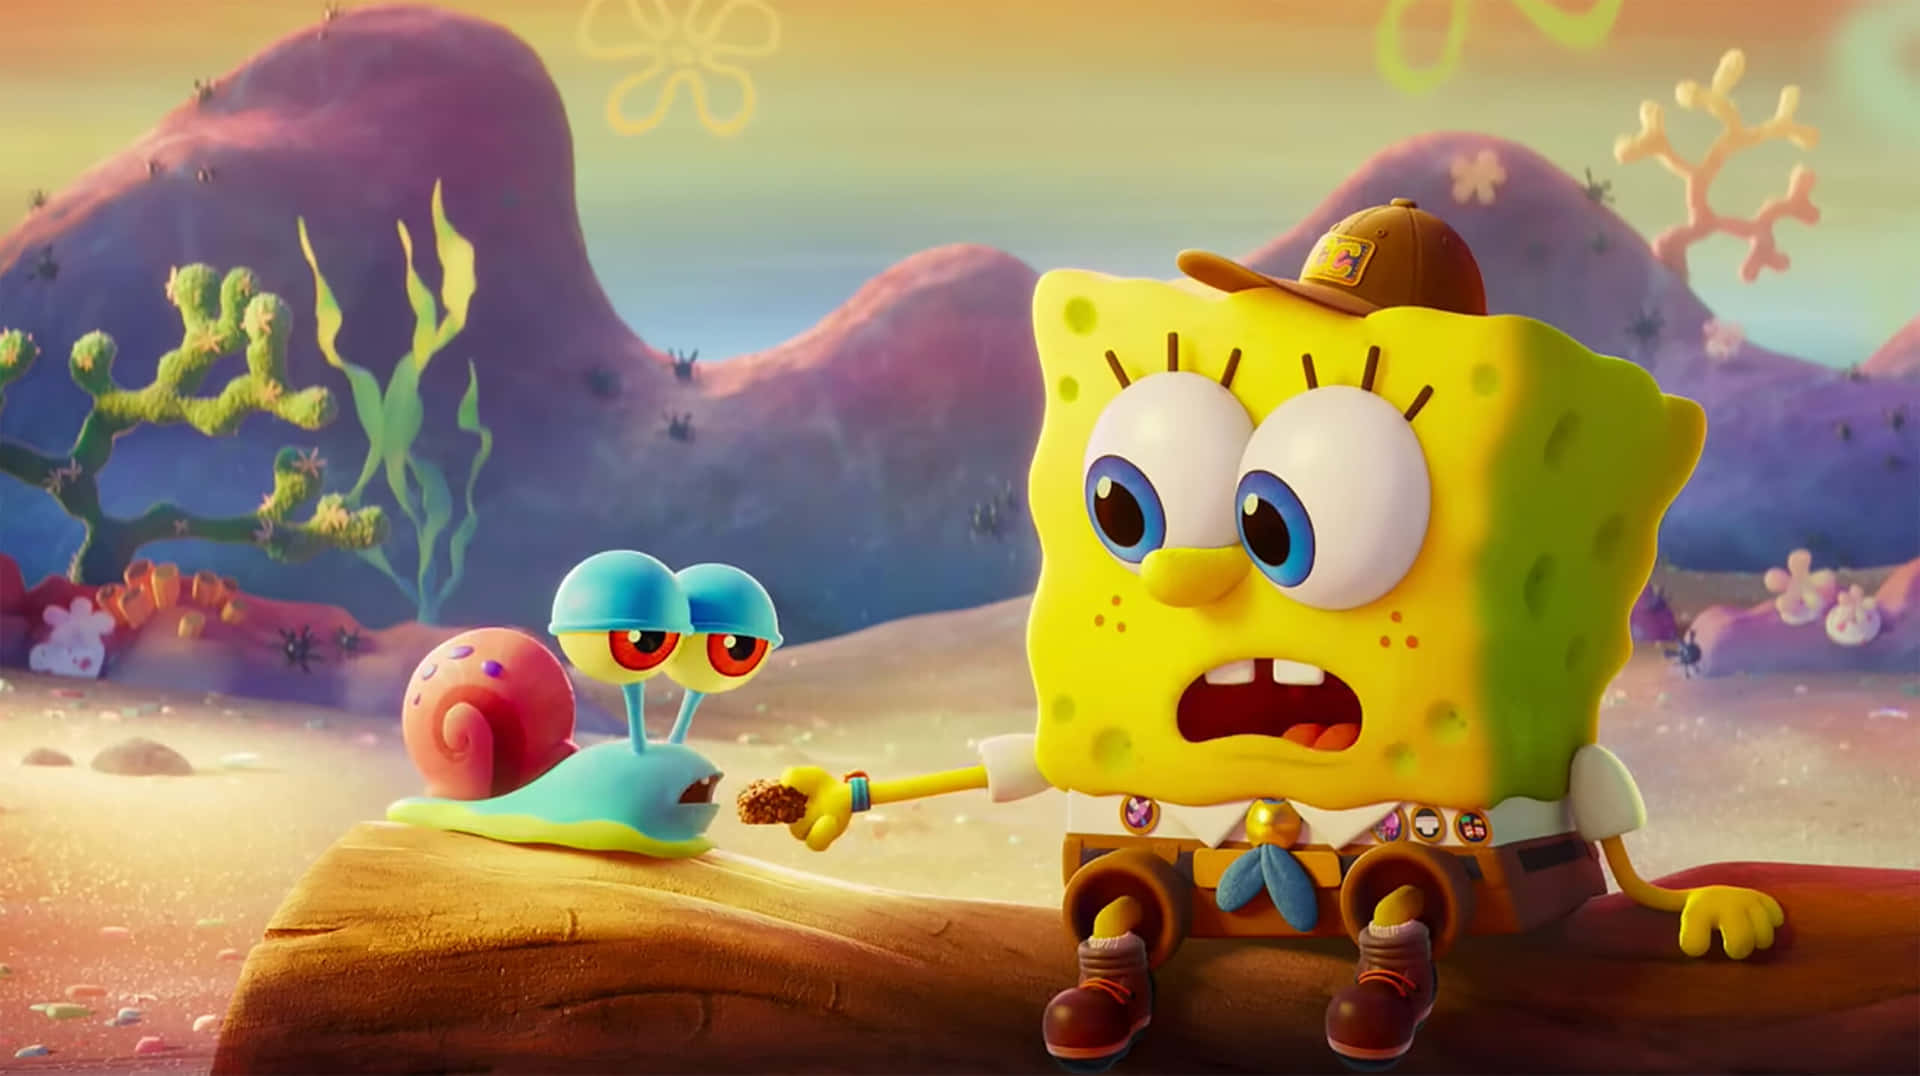 Spongebobund Garys Kindheitsbild